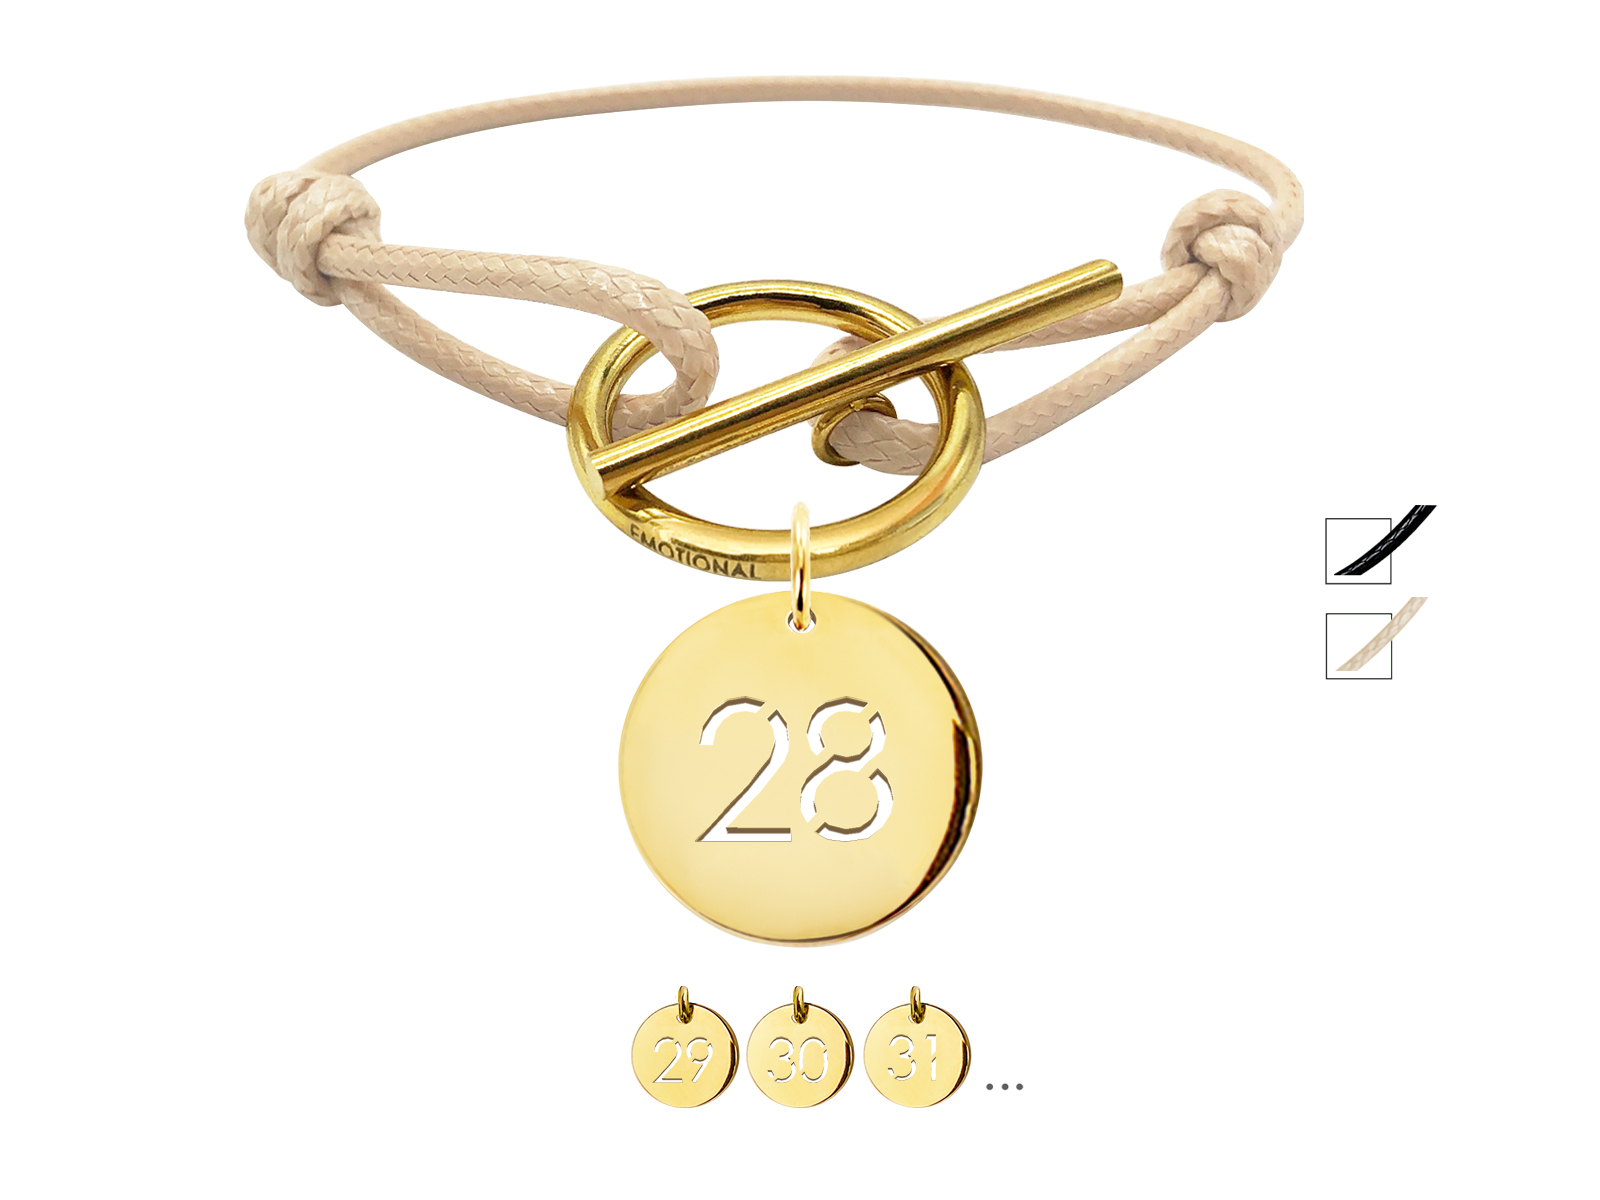 Bracelet cordon ajustable nude avec fermoir T agrémenté d'une pampille numéro découpé en acier inoxydable doré